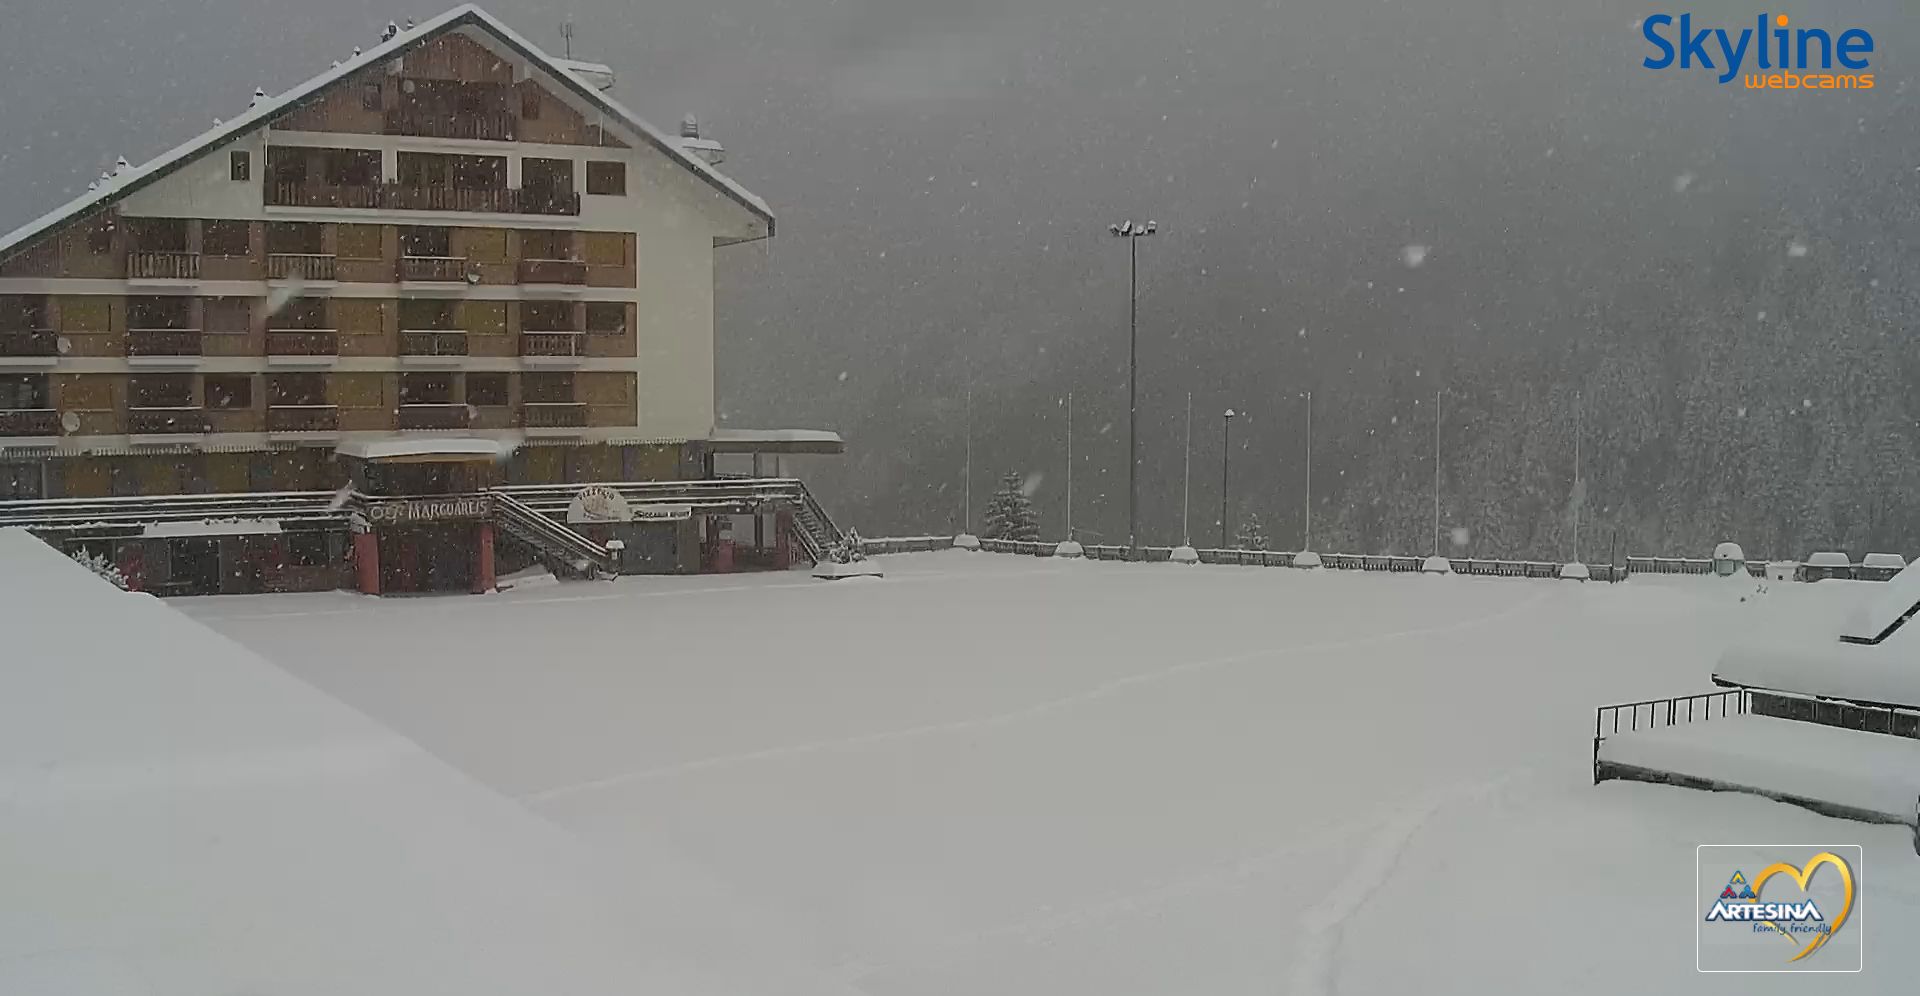 Op dit moment sneeuwt het stevig door in het zuiden van Piemonte, zoals hier in Artesina (Mondolé Ski)